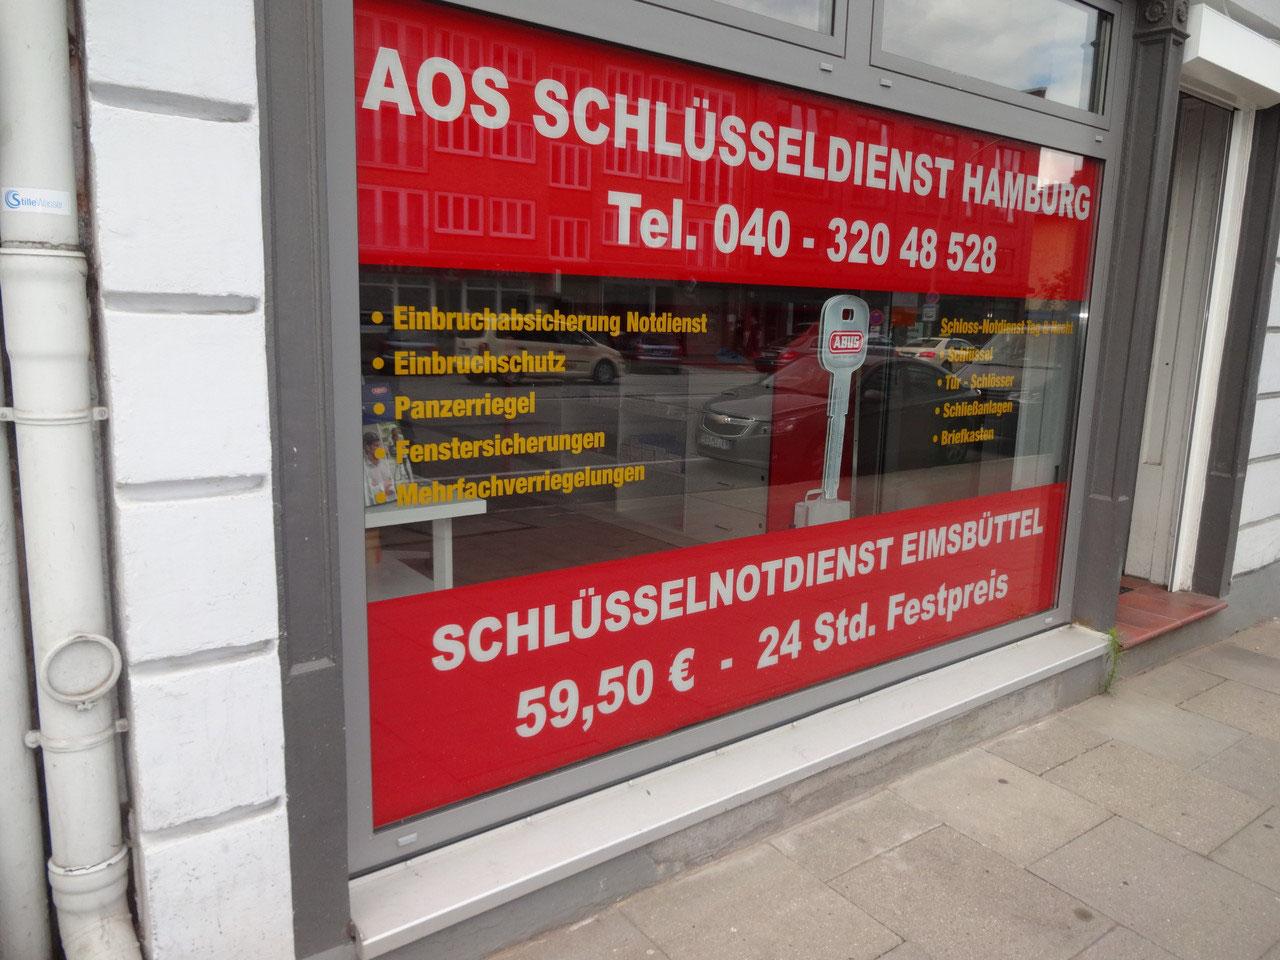 AOS Schlüsseldienst & Schlüsselnotdienst Hamburg, Shanghaiallee 9 in Hamburg